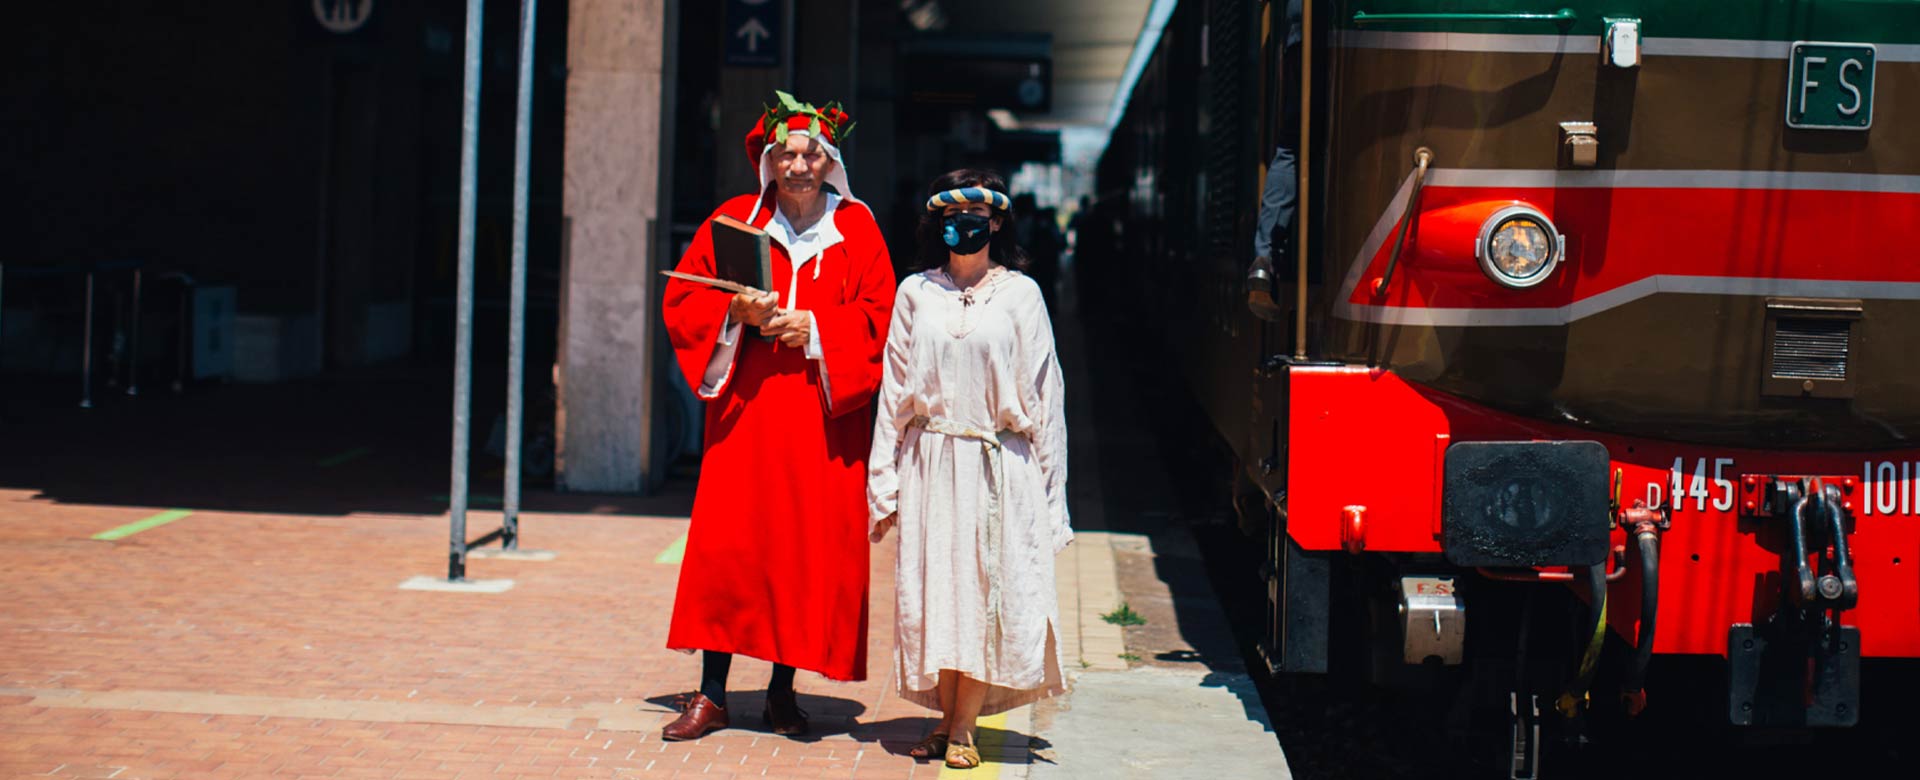 Due figuranti interpretano Dante Alighieri e Beatrice al fianco del Treno di Dante attestato nella stazione ferroviaria di Ravenna © Il Treno di Dante s.r.l.